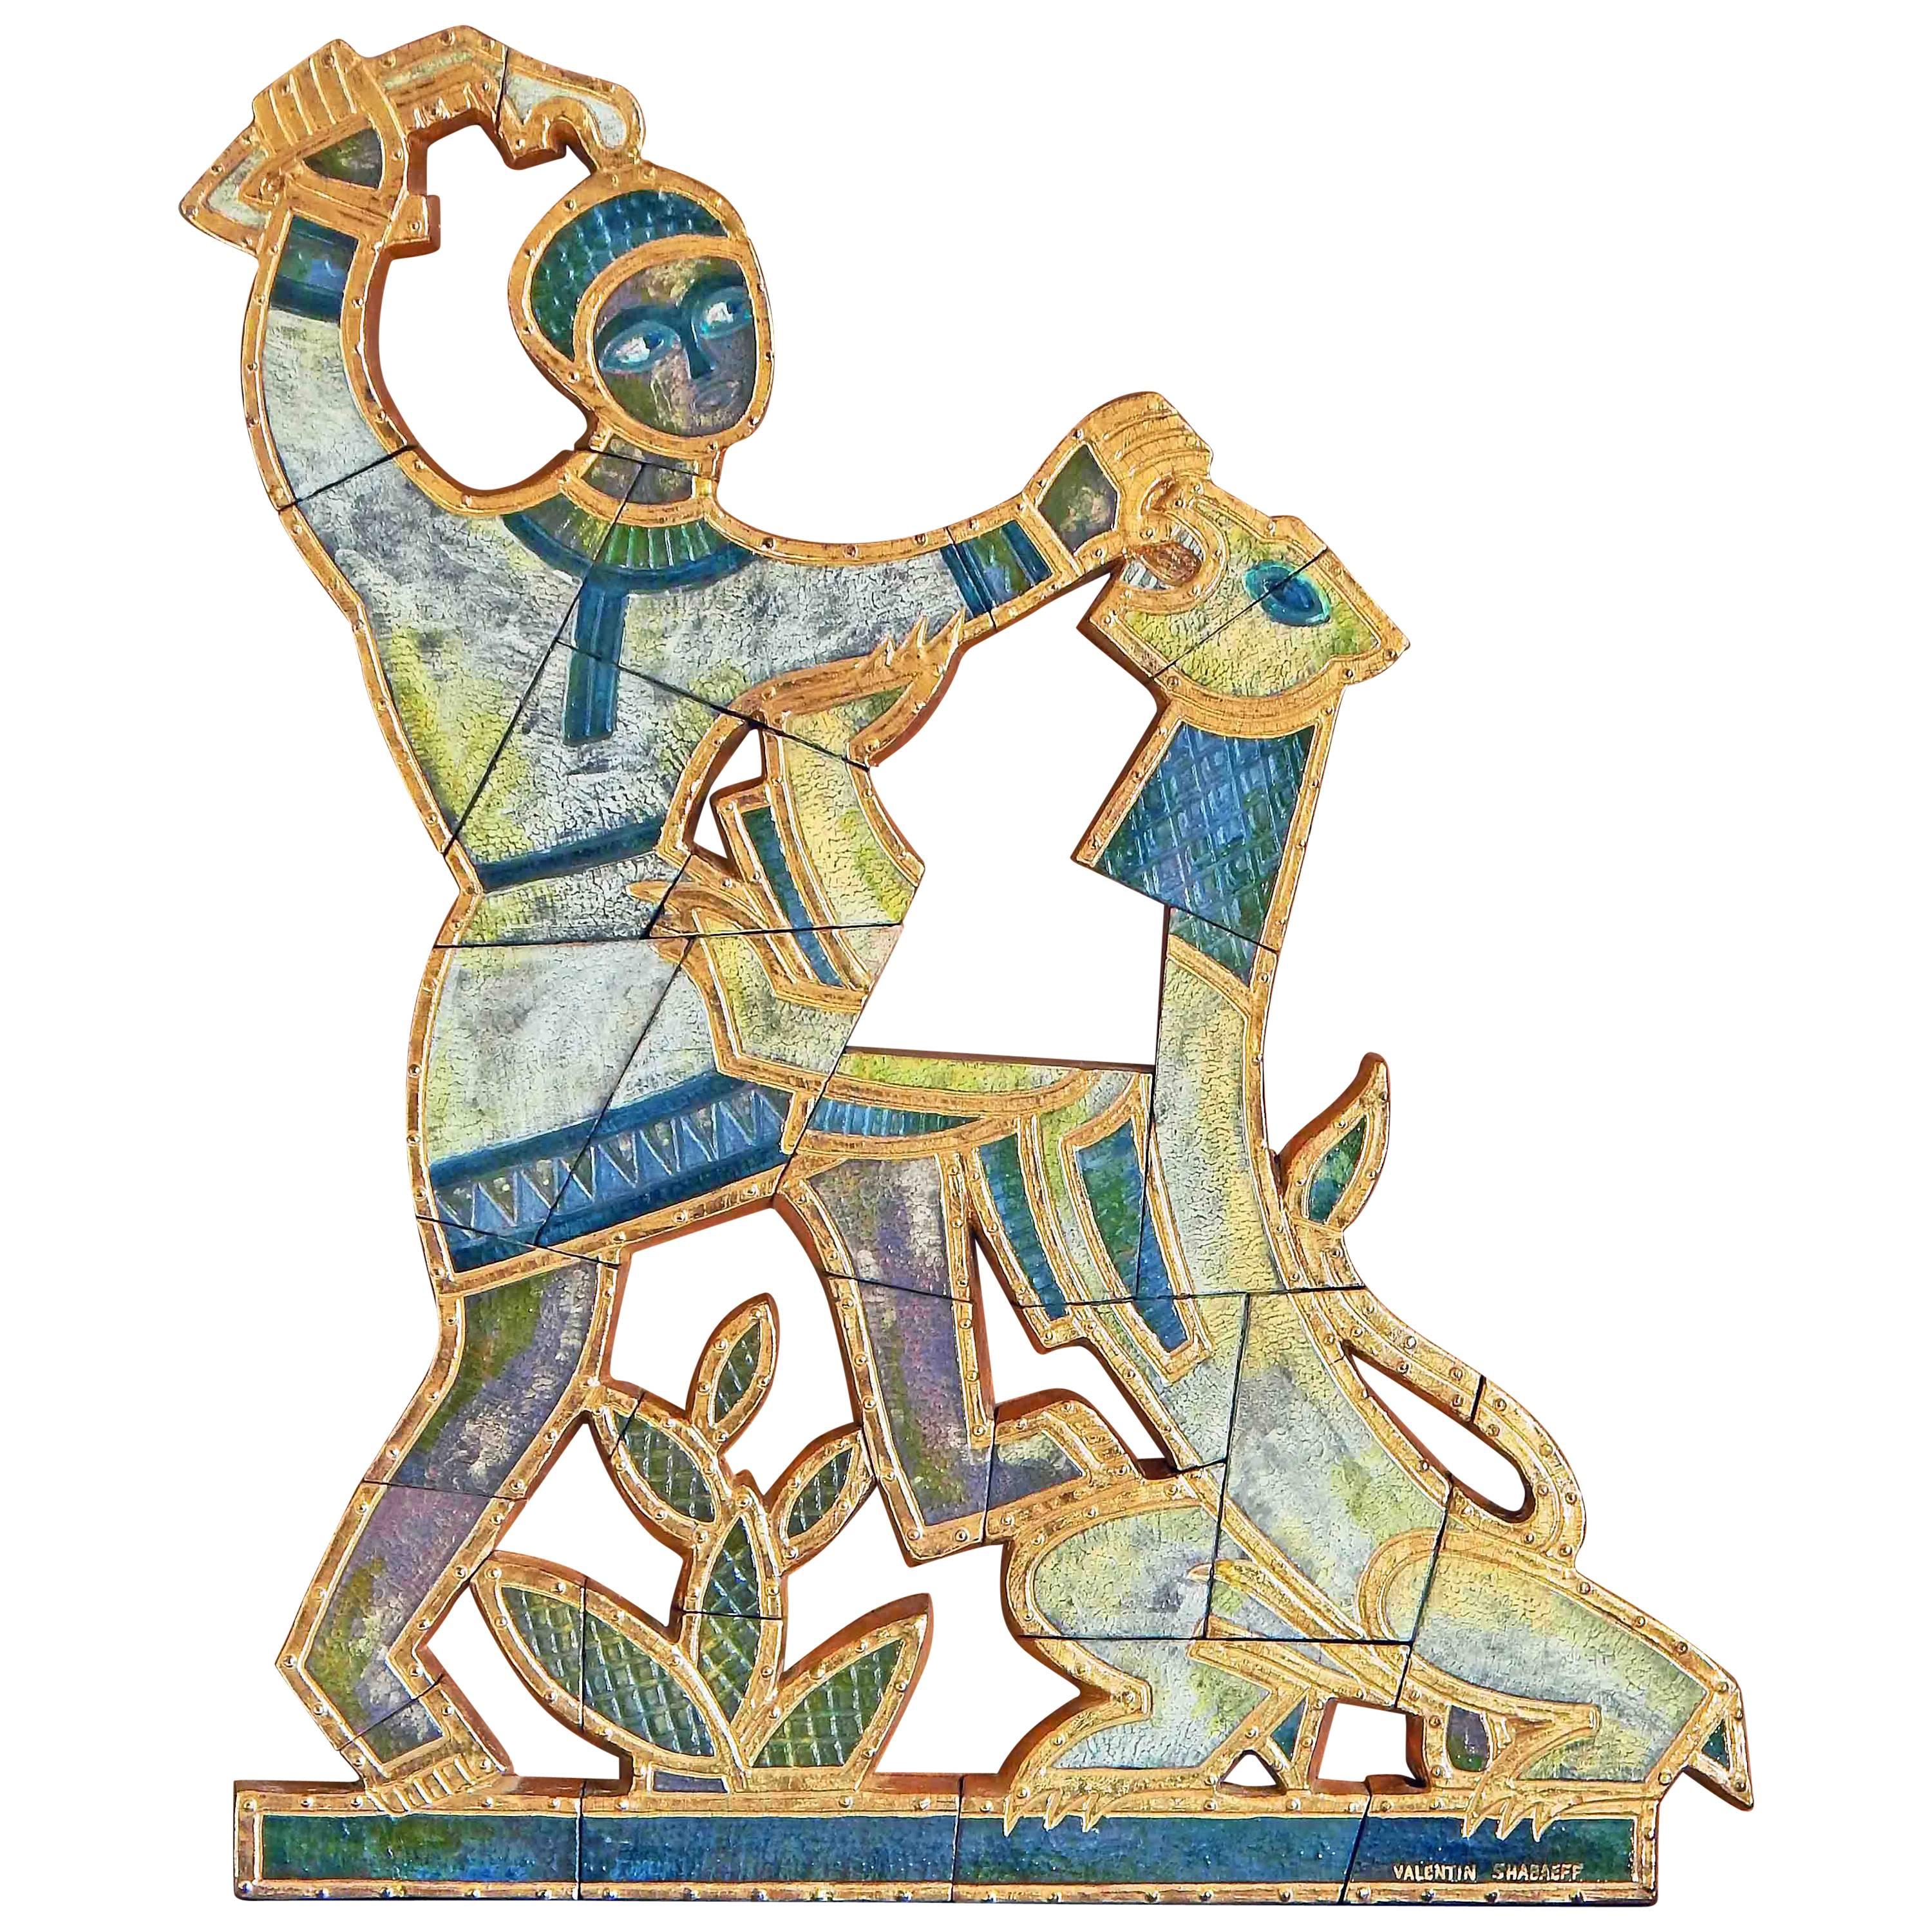 Tour de force de la sculpture murale Art déco, cette représentation de Samson terrassant le lion a été réalisée par Valentin Shabaeff, un artiste russo-canadien installé à Montréal. Shabaeff s'est fait connaître pour ses sculptures en bas-relief